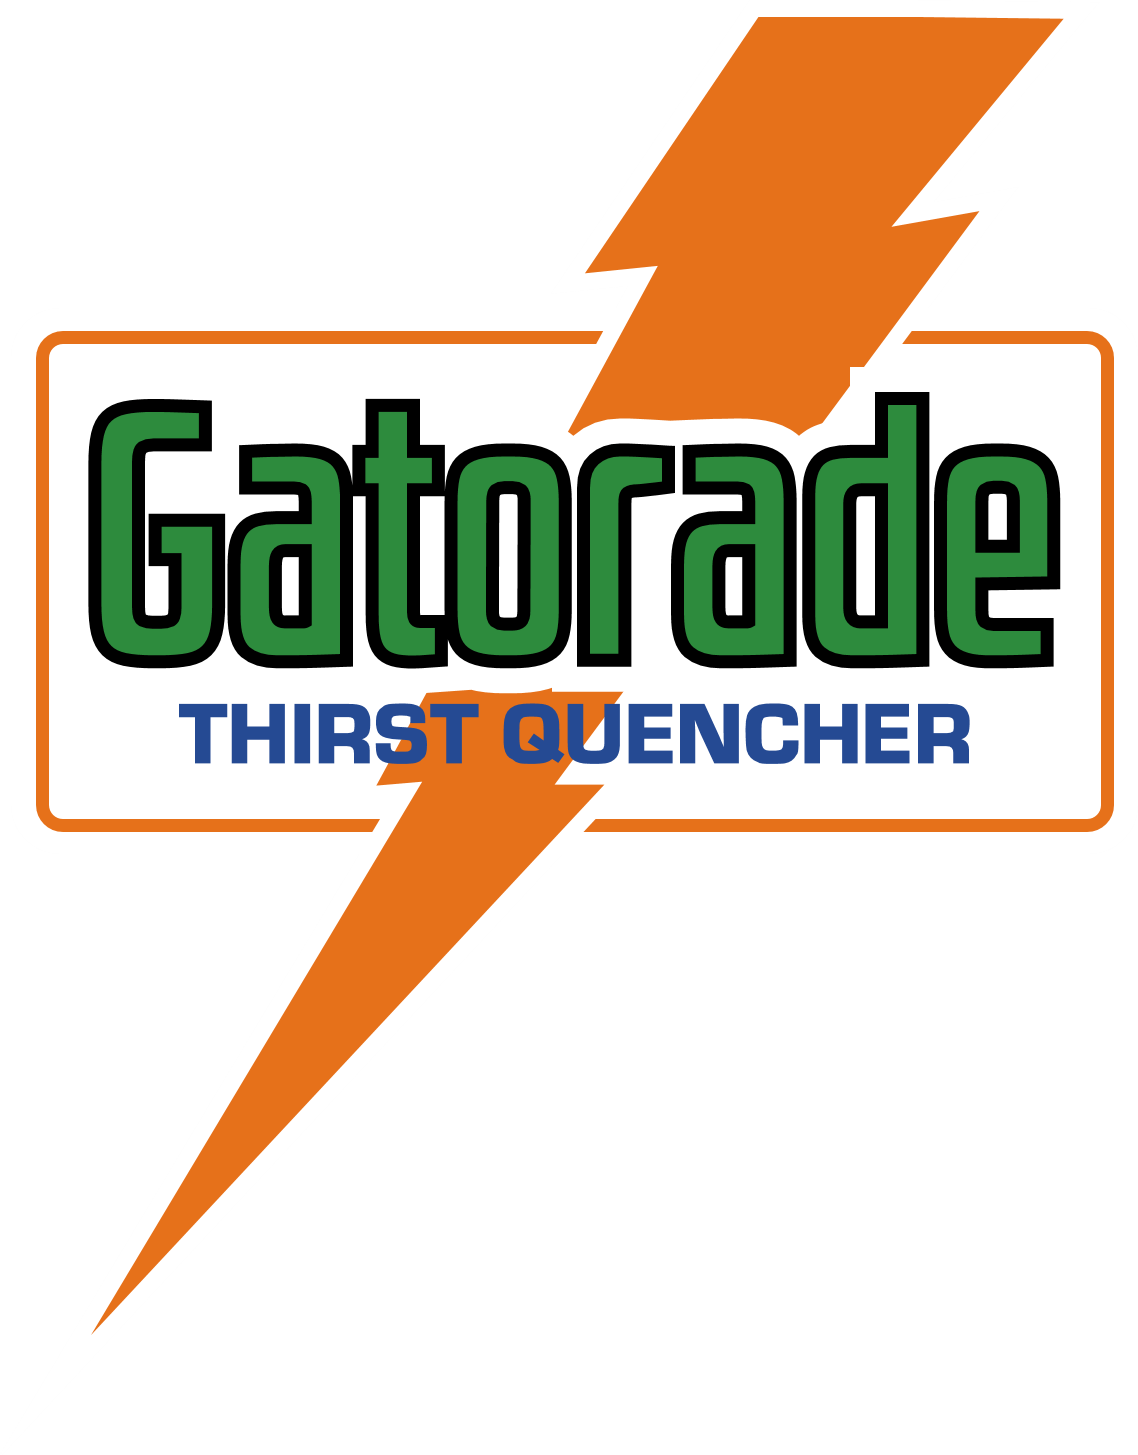 Old Gatorade Logo - Gatorade (El Kadsre) | Dream Logos Wiki | FANDOM powered by Wikia